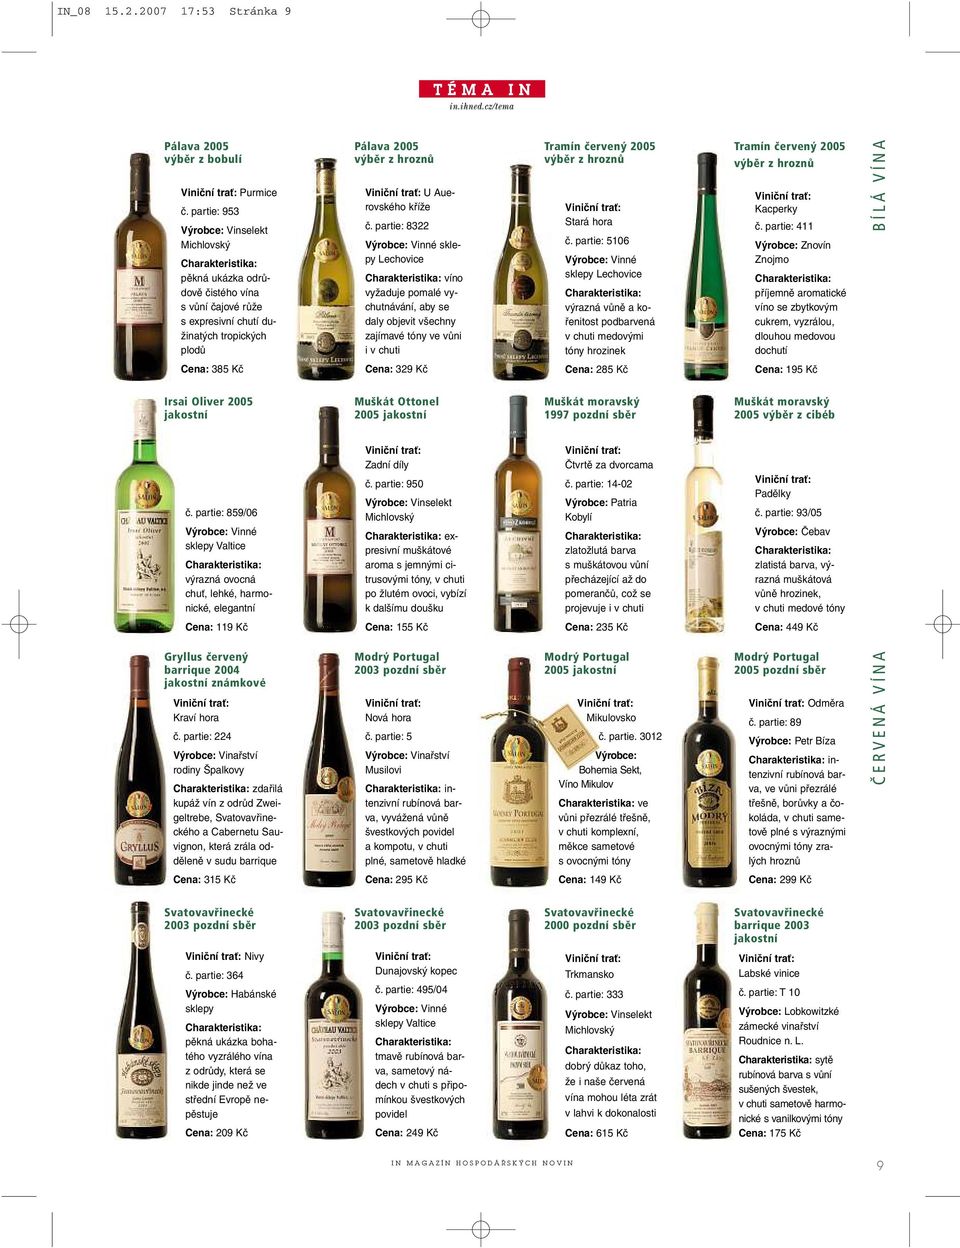 partie: 8322 Výrobce: Vinné sklepy Lechovice víno vyžaduje pomalé vychutnávání, aby se daly objevit všechny zajímavé tóny ve vůni ivchuti Tramín červený 2005 Stará hora č.